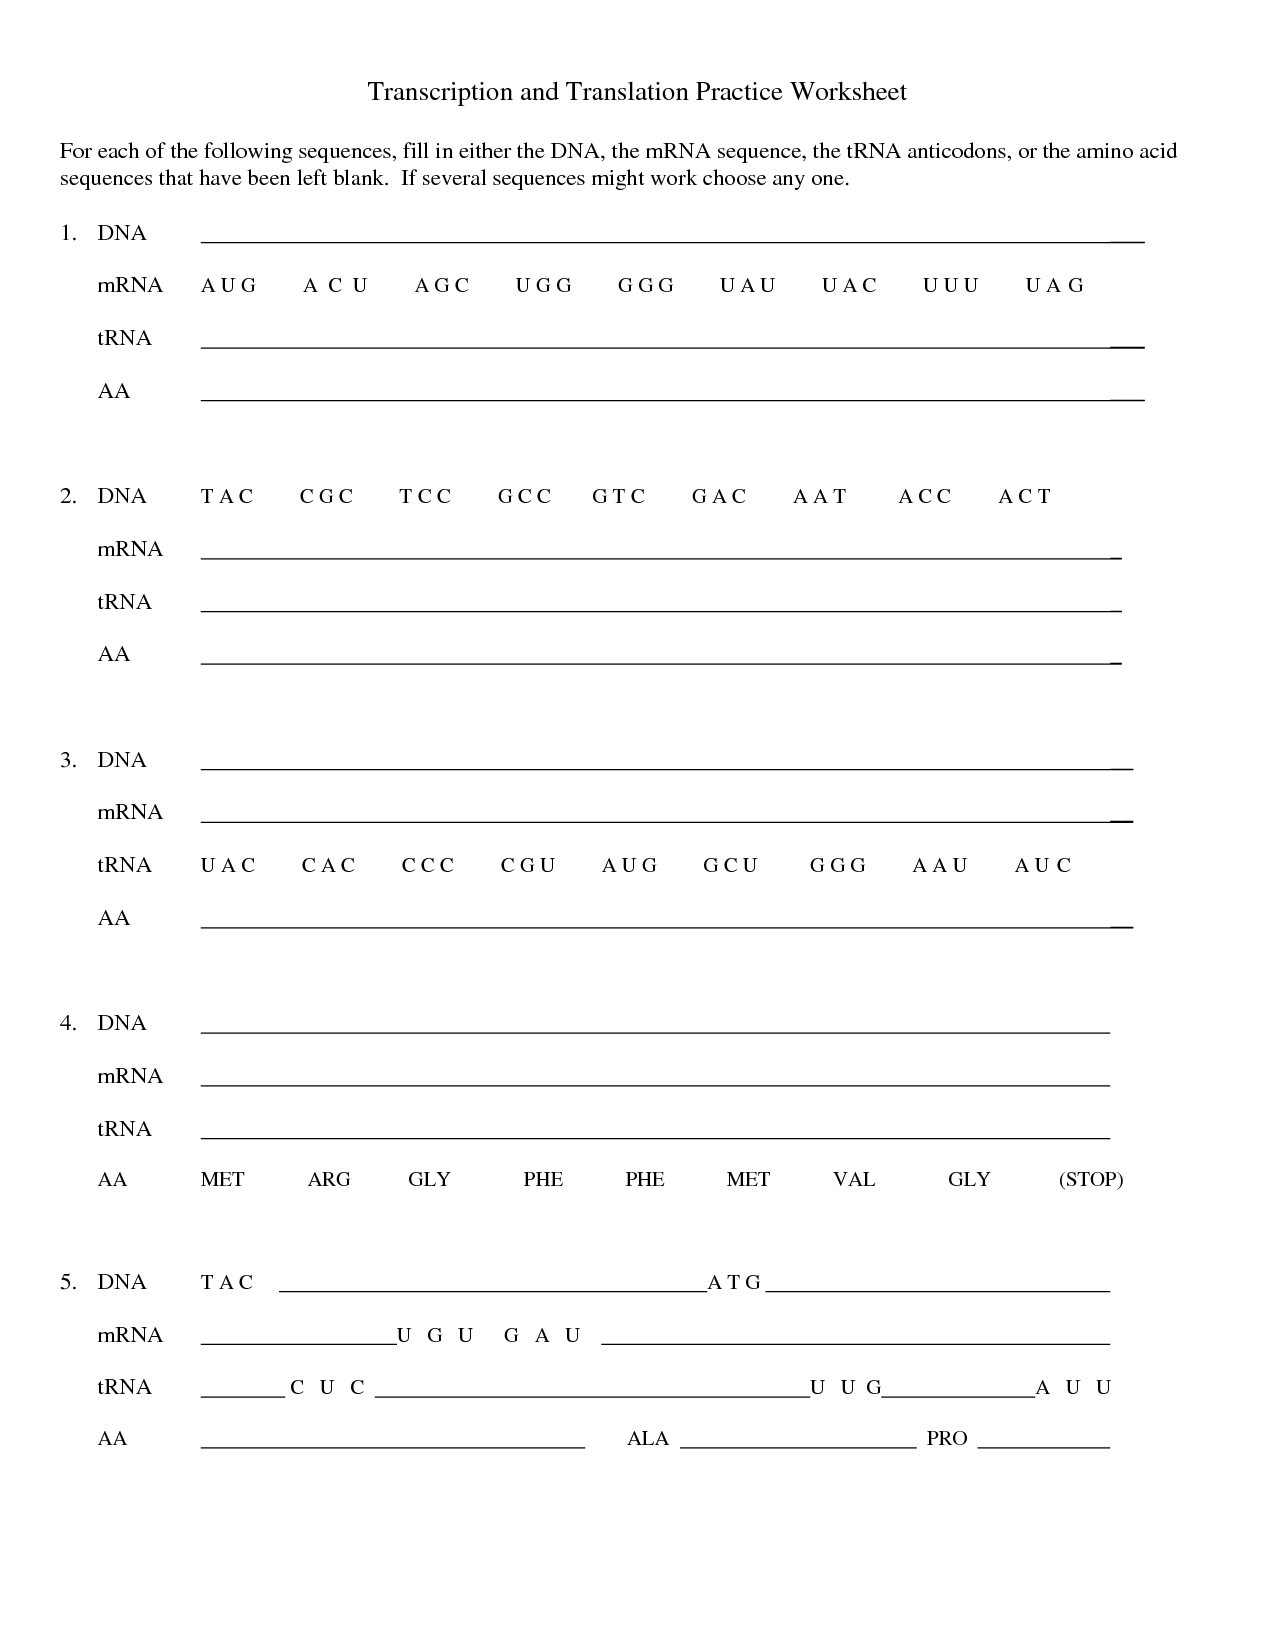 Transcription and Translation Practice Worksheet Image